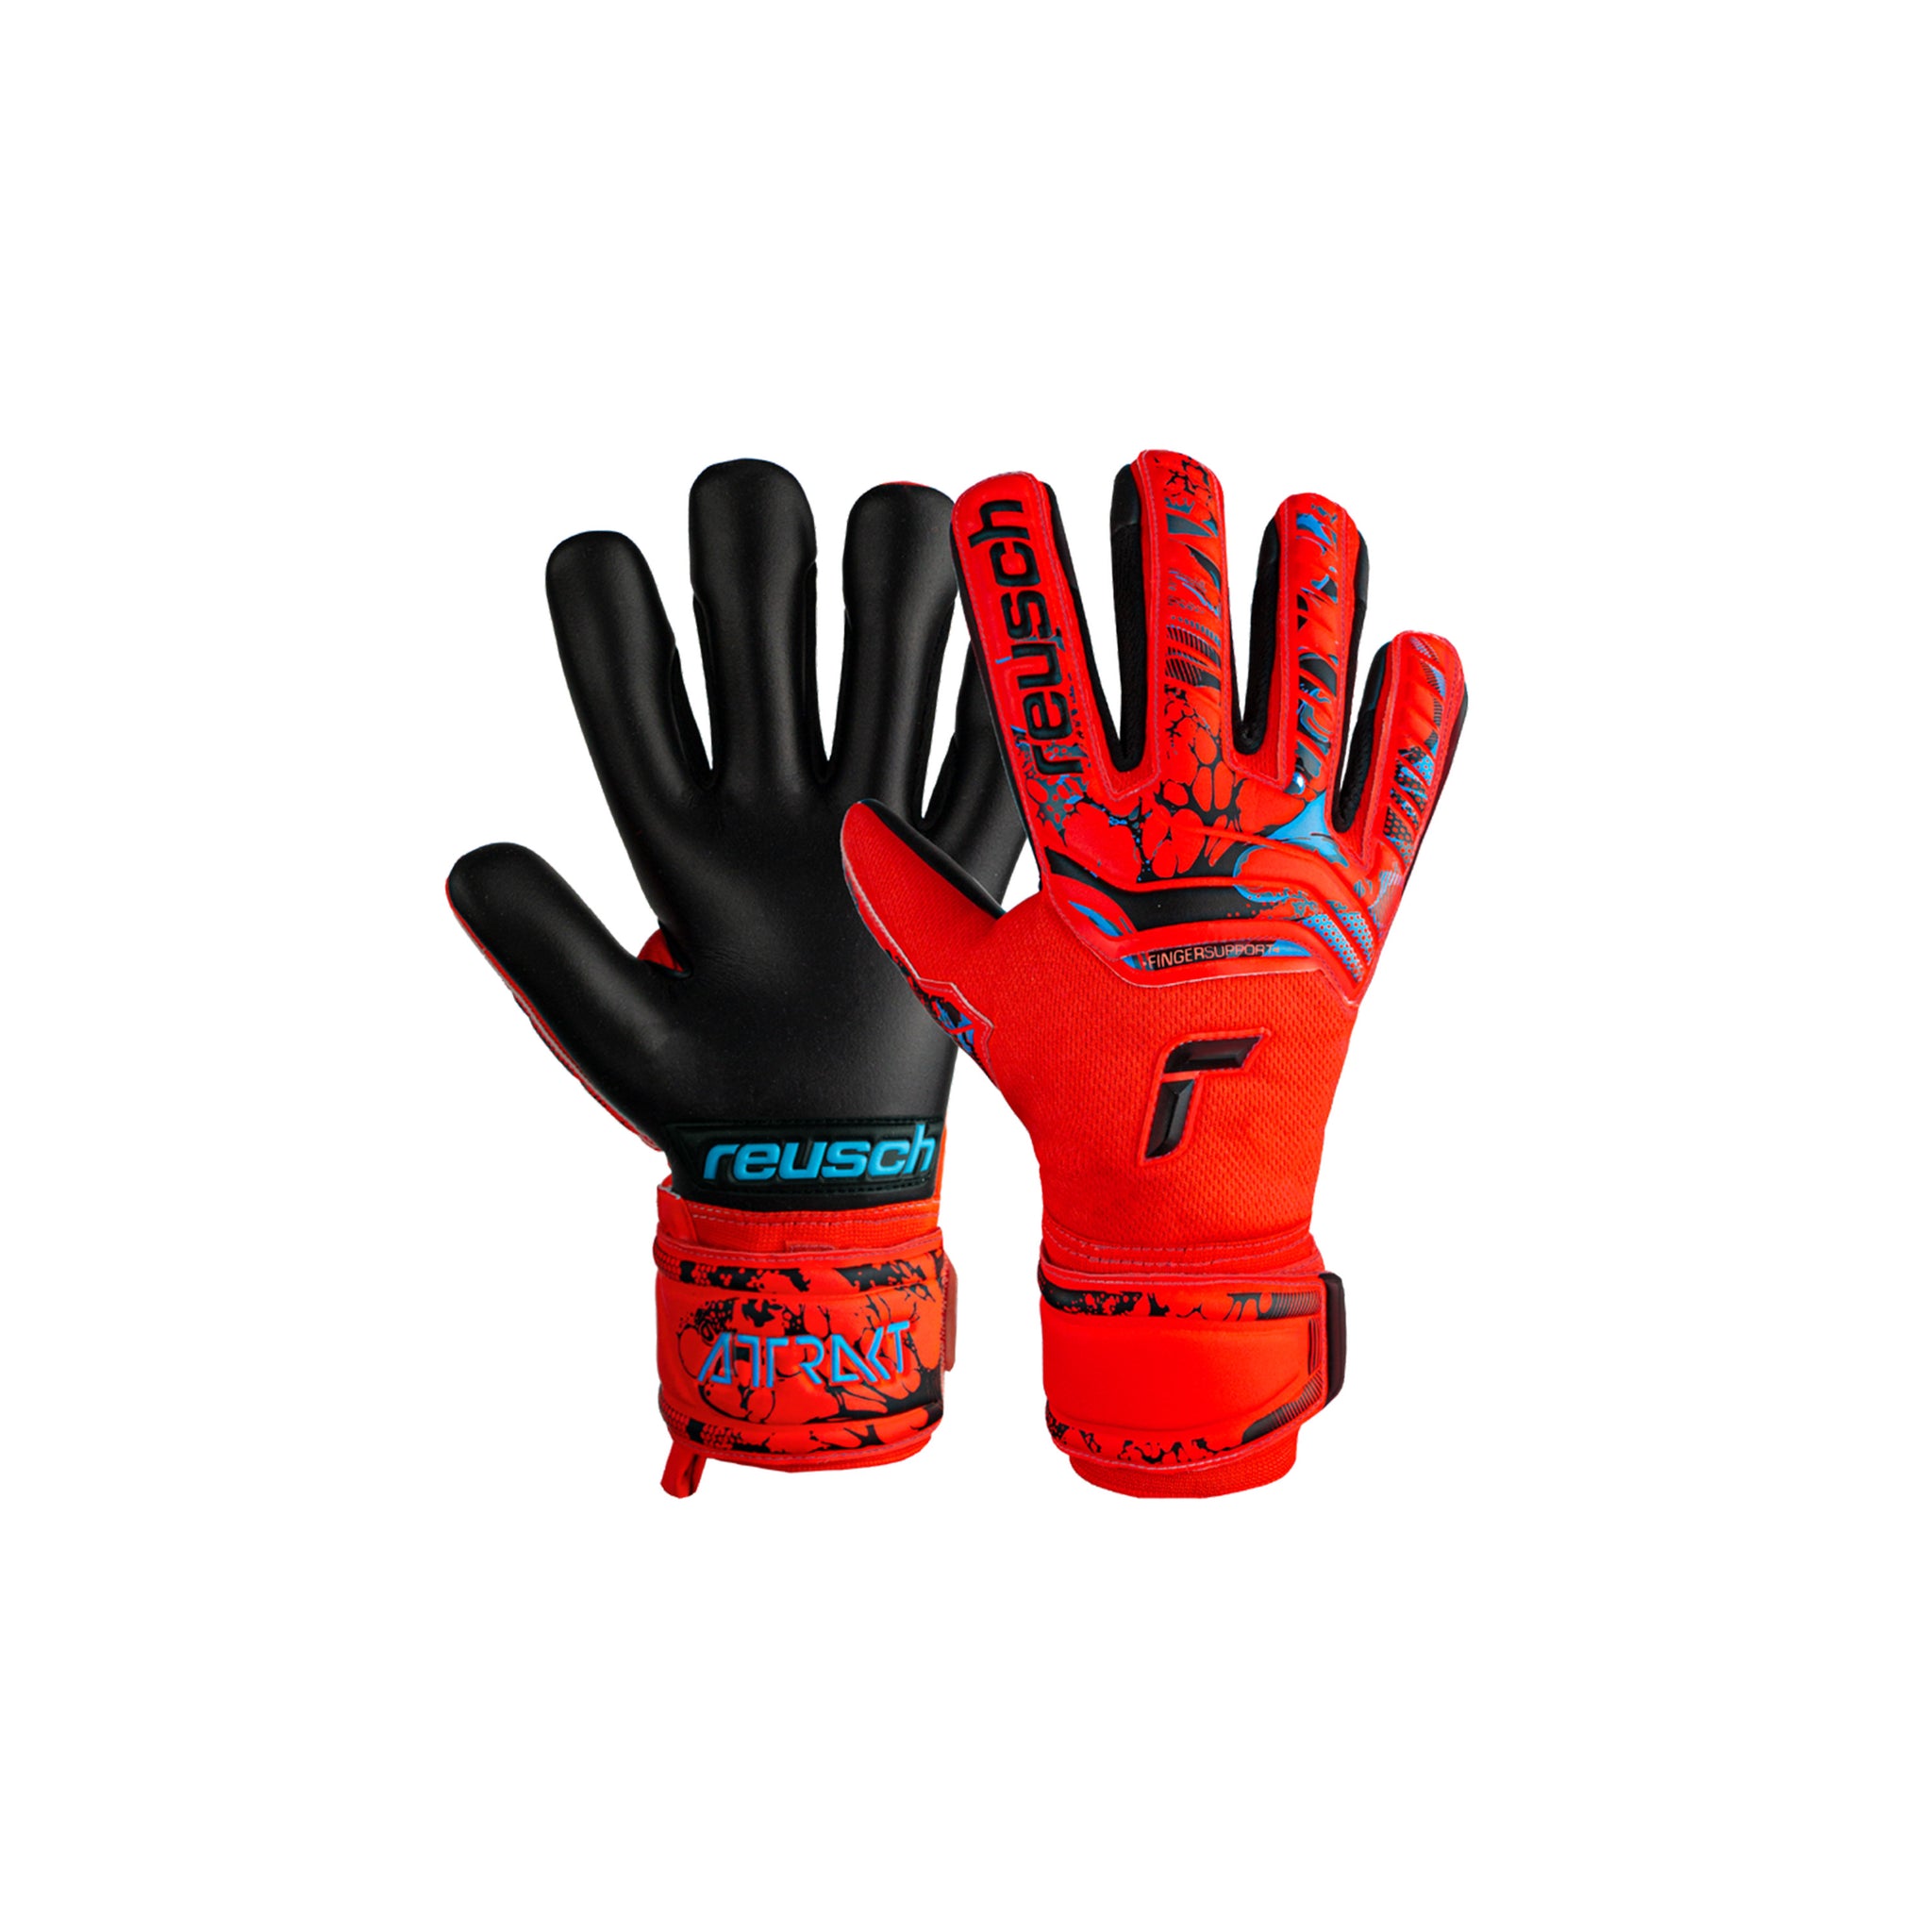 REUSCH Attrakt Grip Evolution Finger Support Gloves